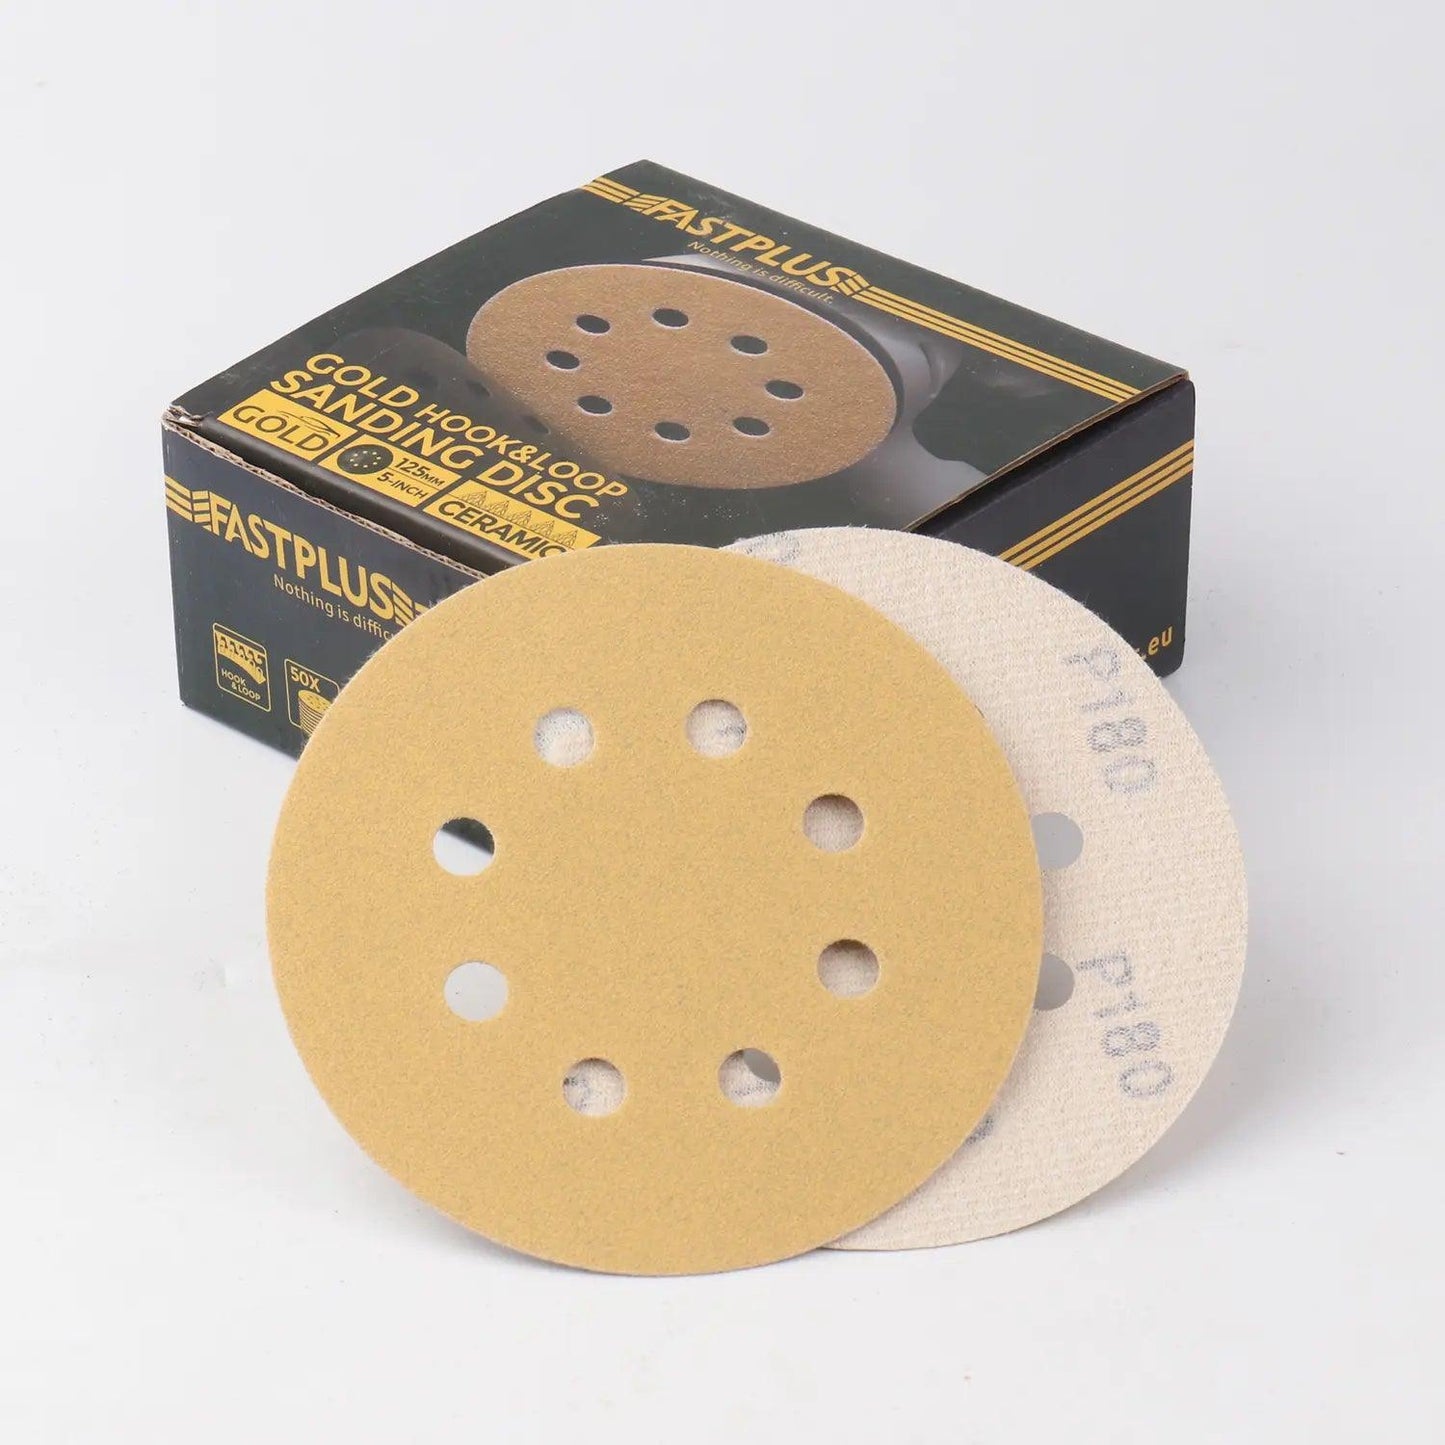 125mm Klett-schleifscheiben gold mirka f15 sanding discs fastplus P180